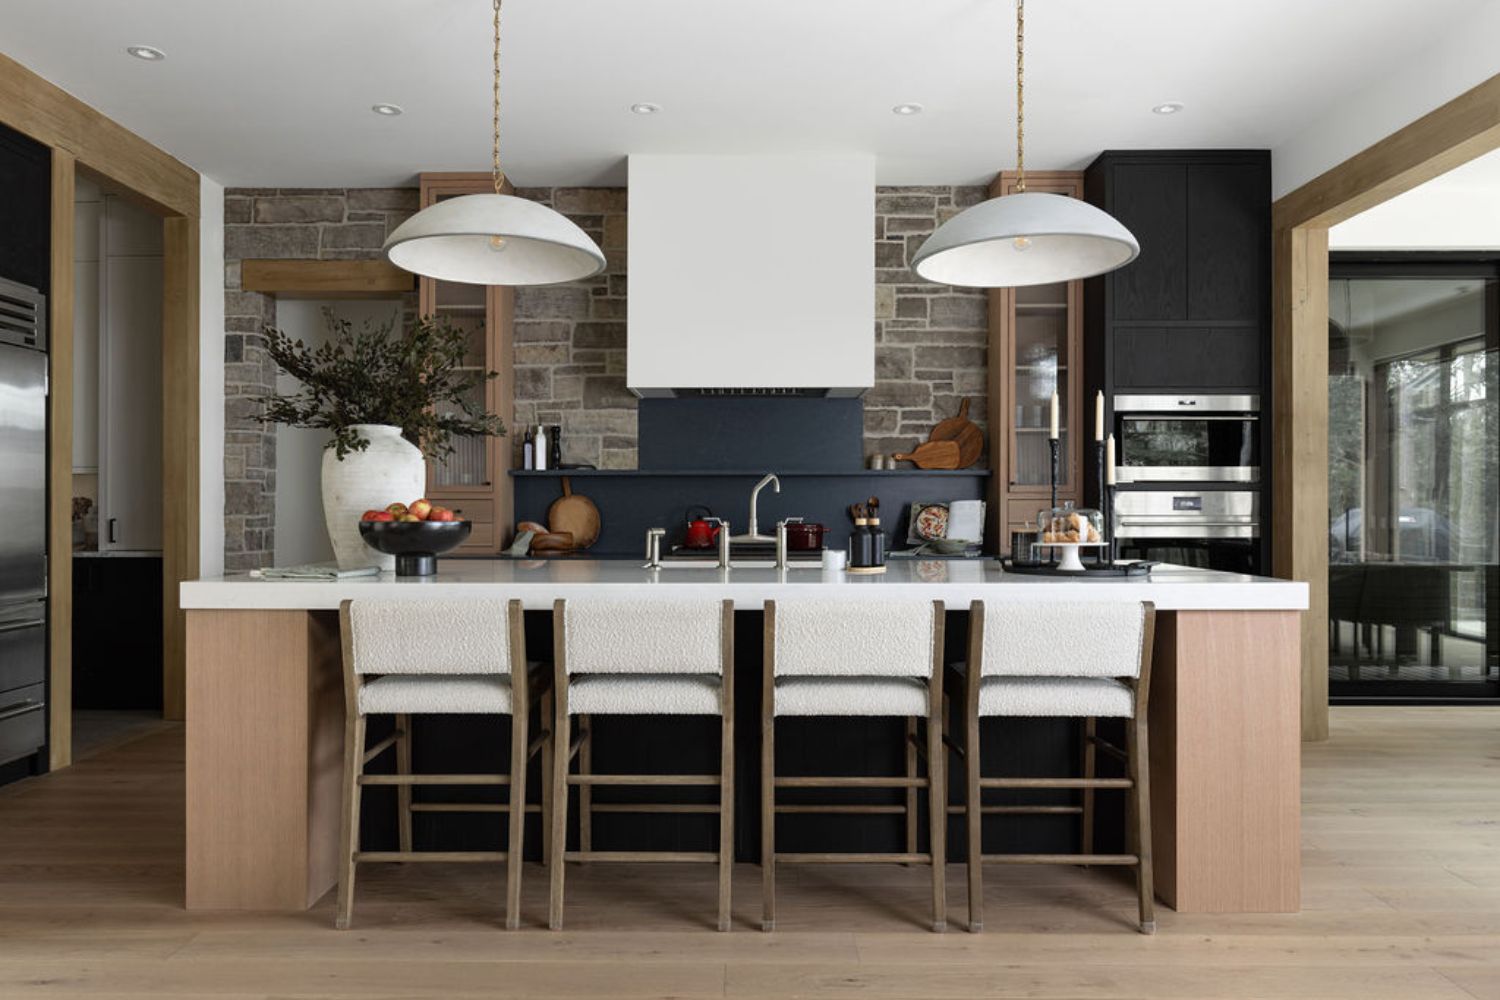 Project Fieldale: Flat cut panel red oak kitchen cabinets 